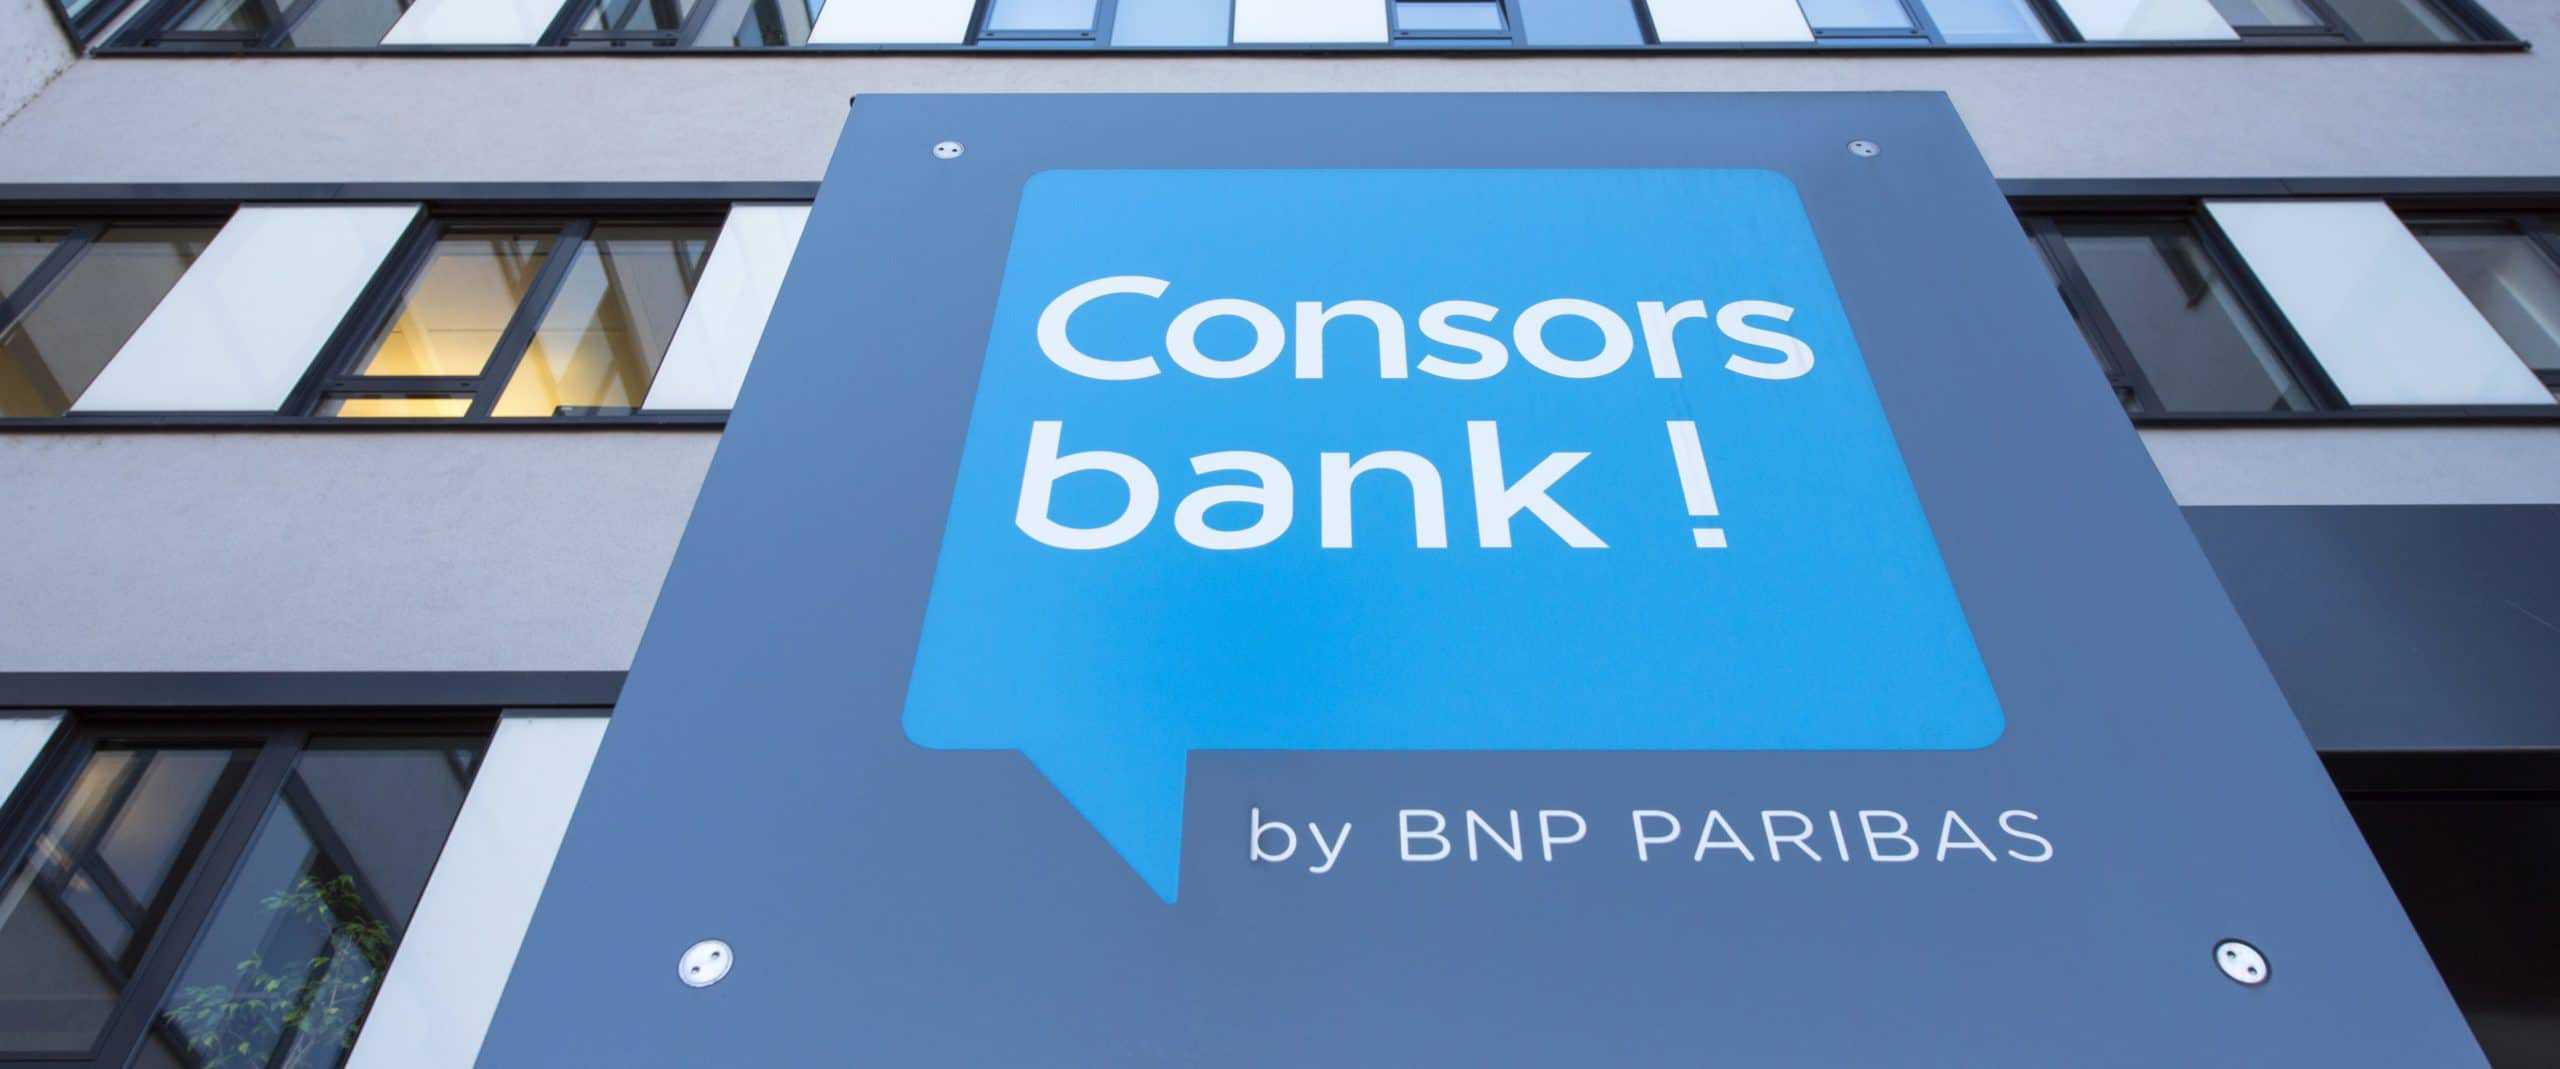 Consorsbank Stockt Bei Sparplanen Auf Etf Nachrichten